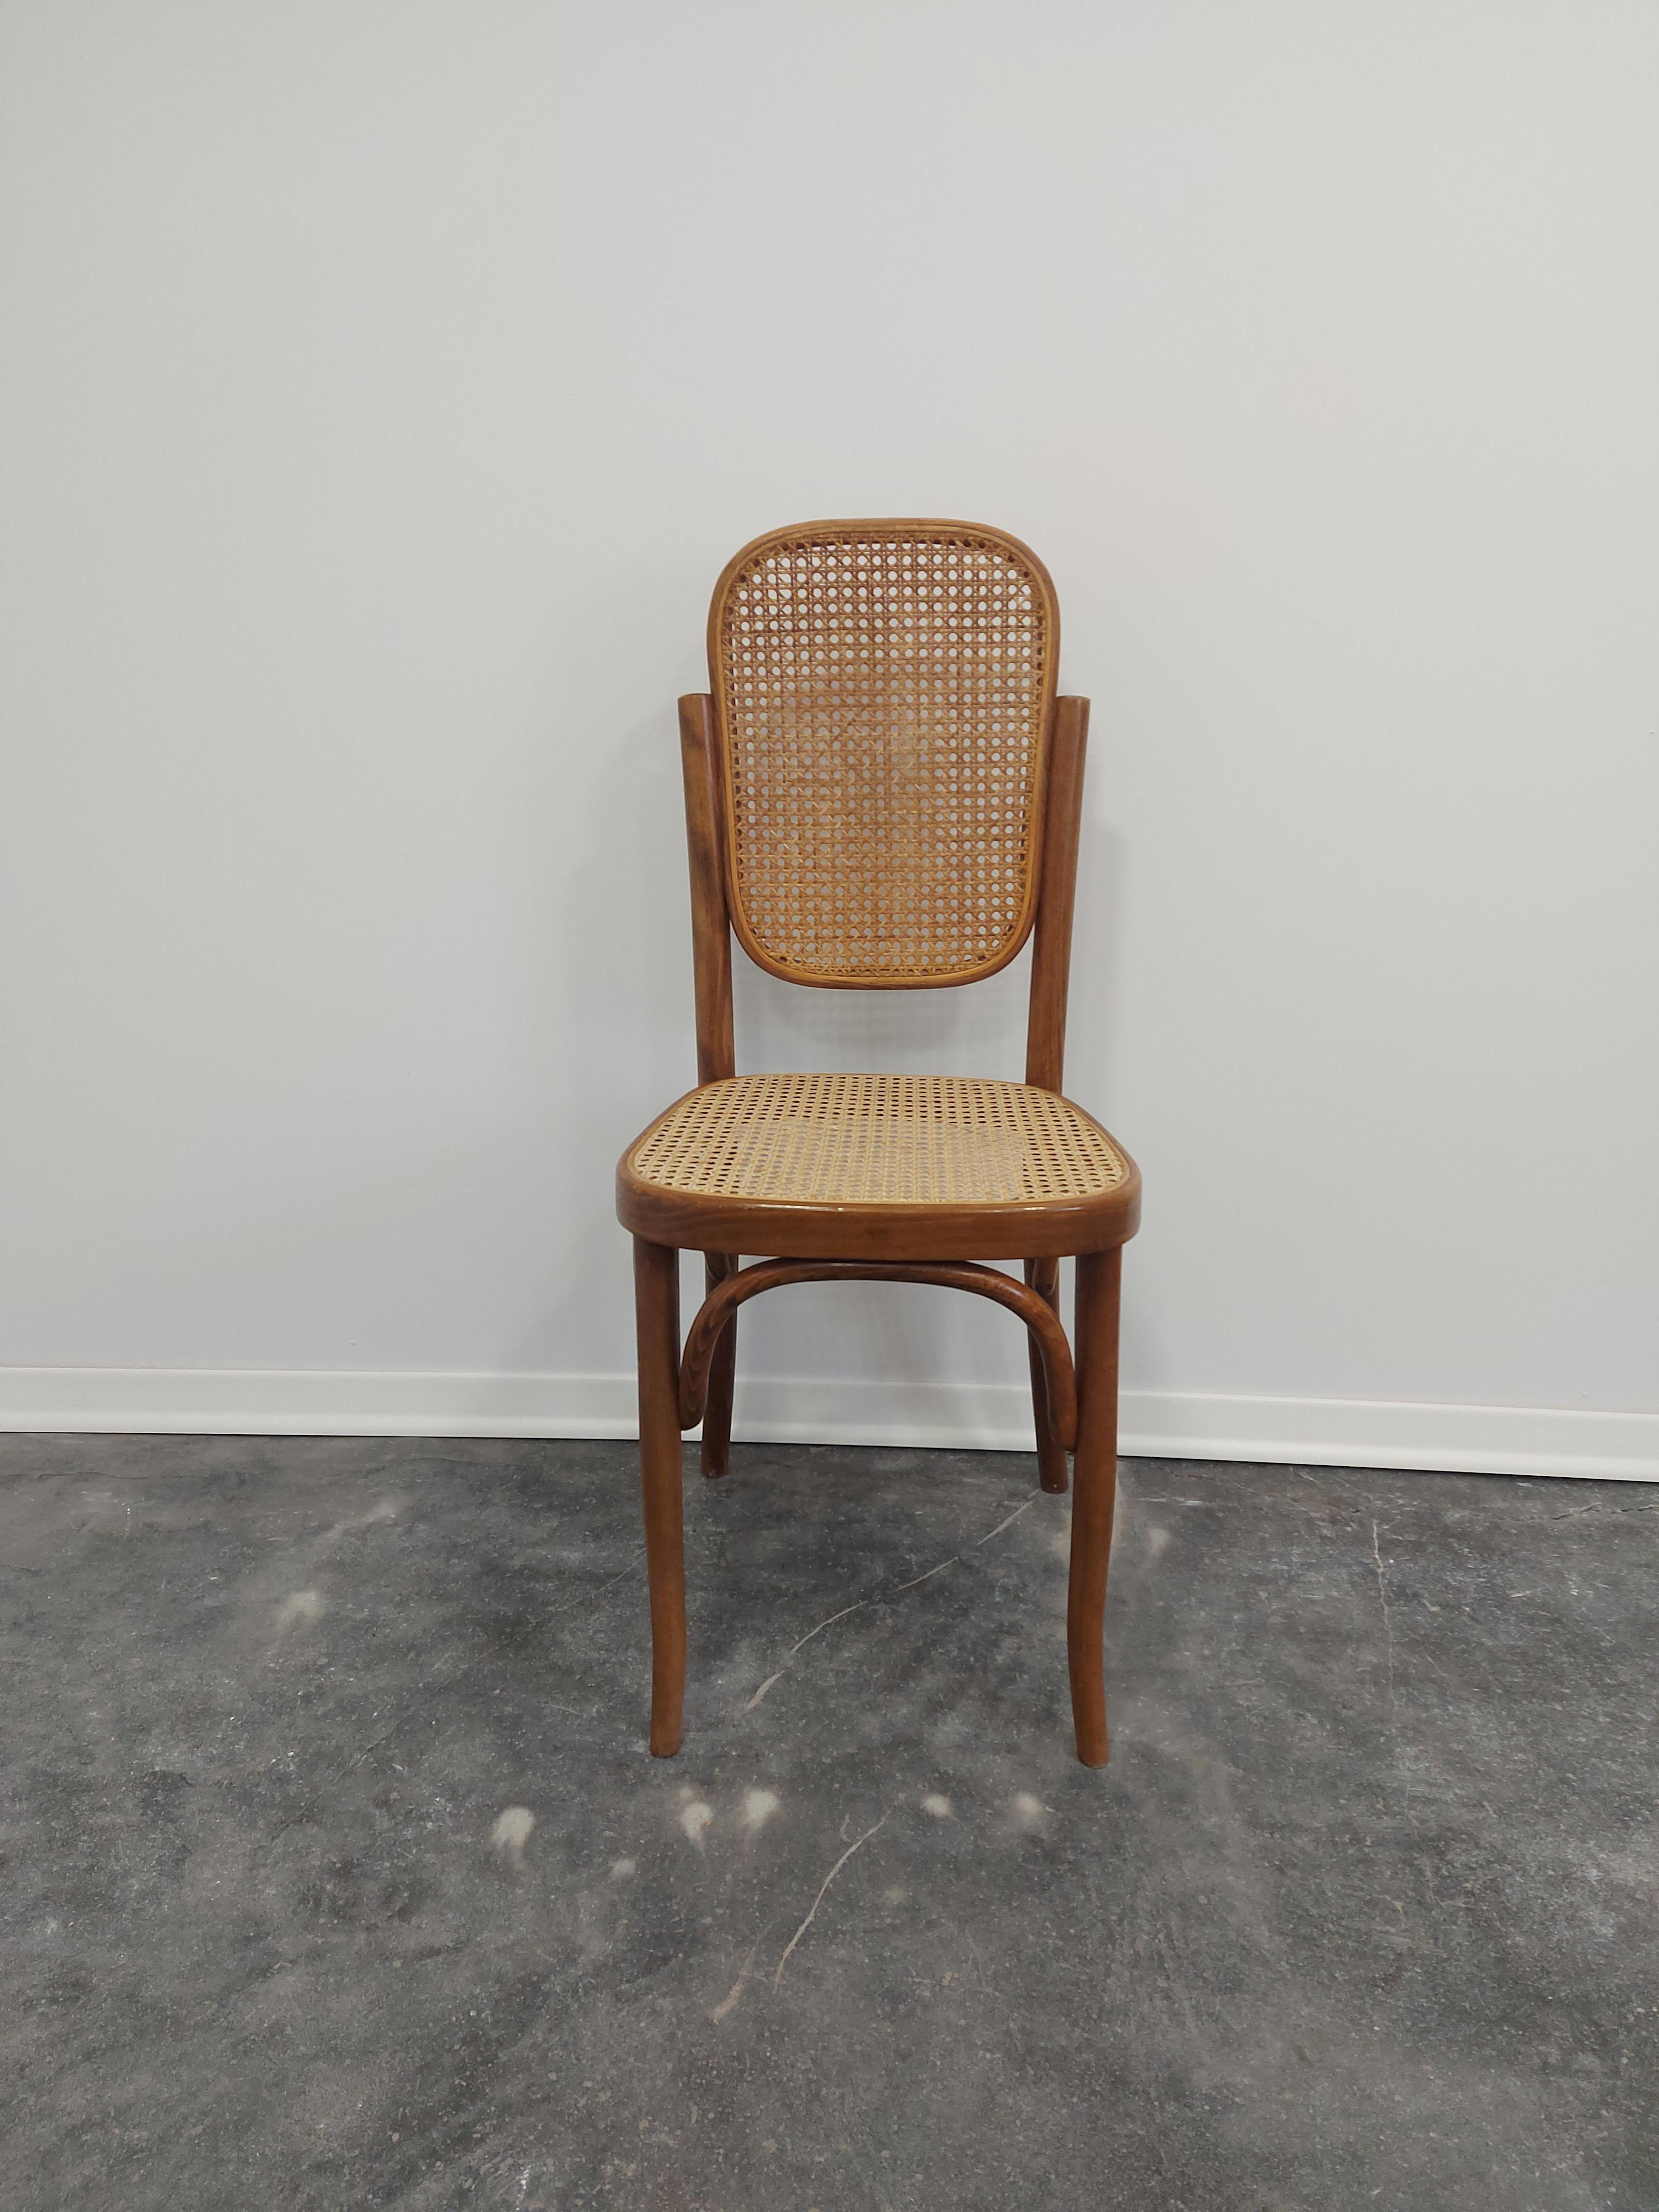 Bentwood cane Chair in Vintage Zustand (gut erhalten) sehr seltener Fund.

Produktionszeitraum: 1960s

MATERIALIEN: Bugholz, Schilfrohr

Zustand: großartig, Gebrauchsspuren, unbeschädigt